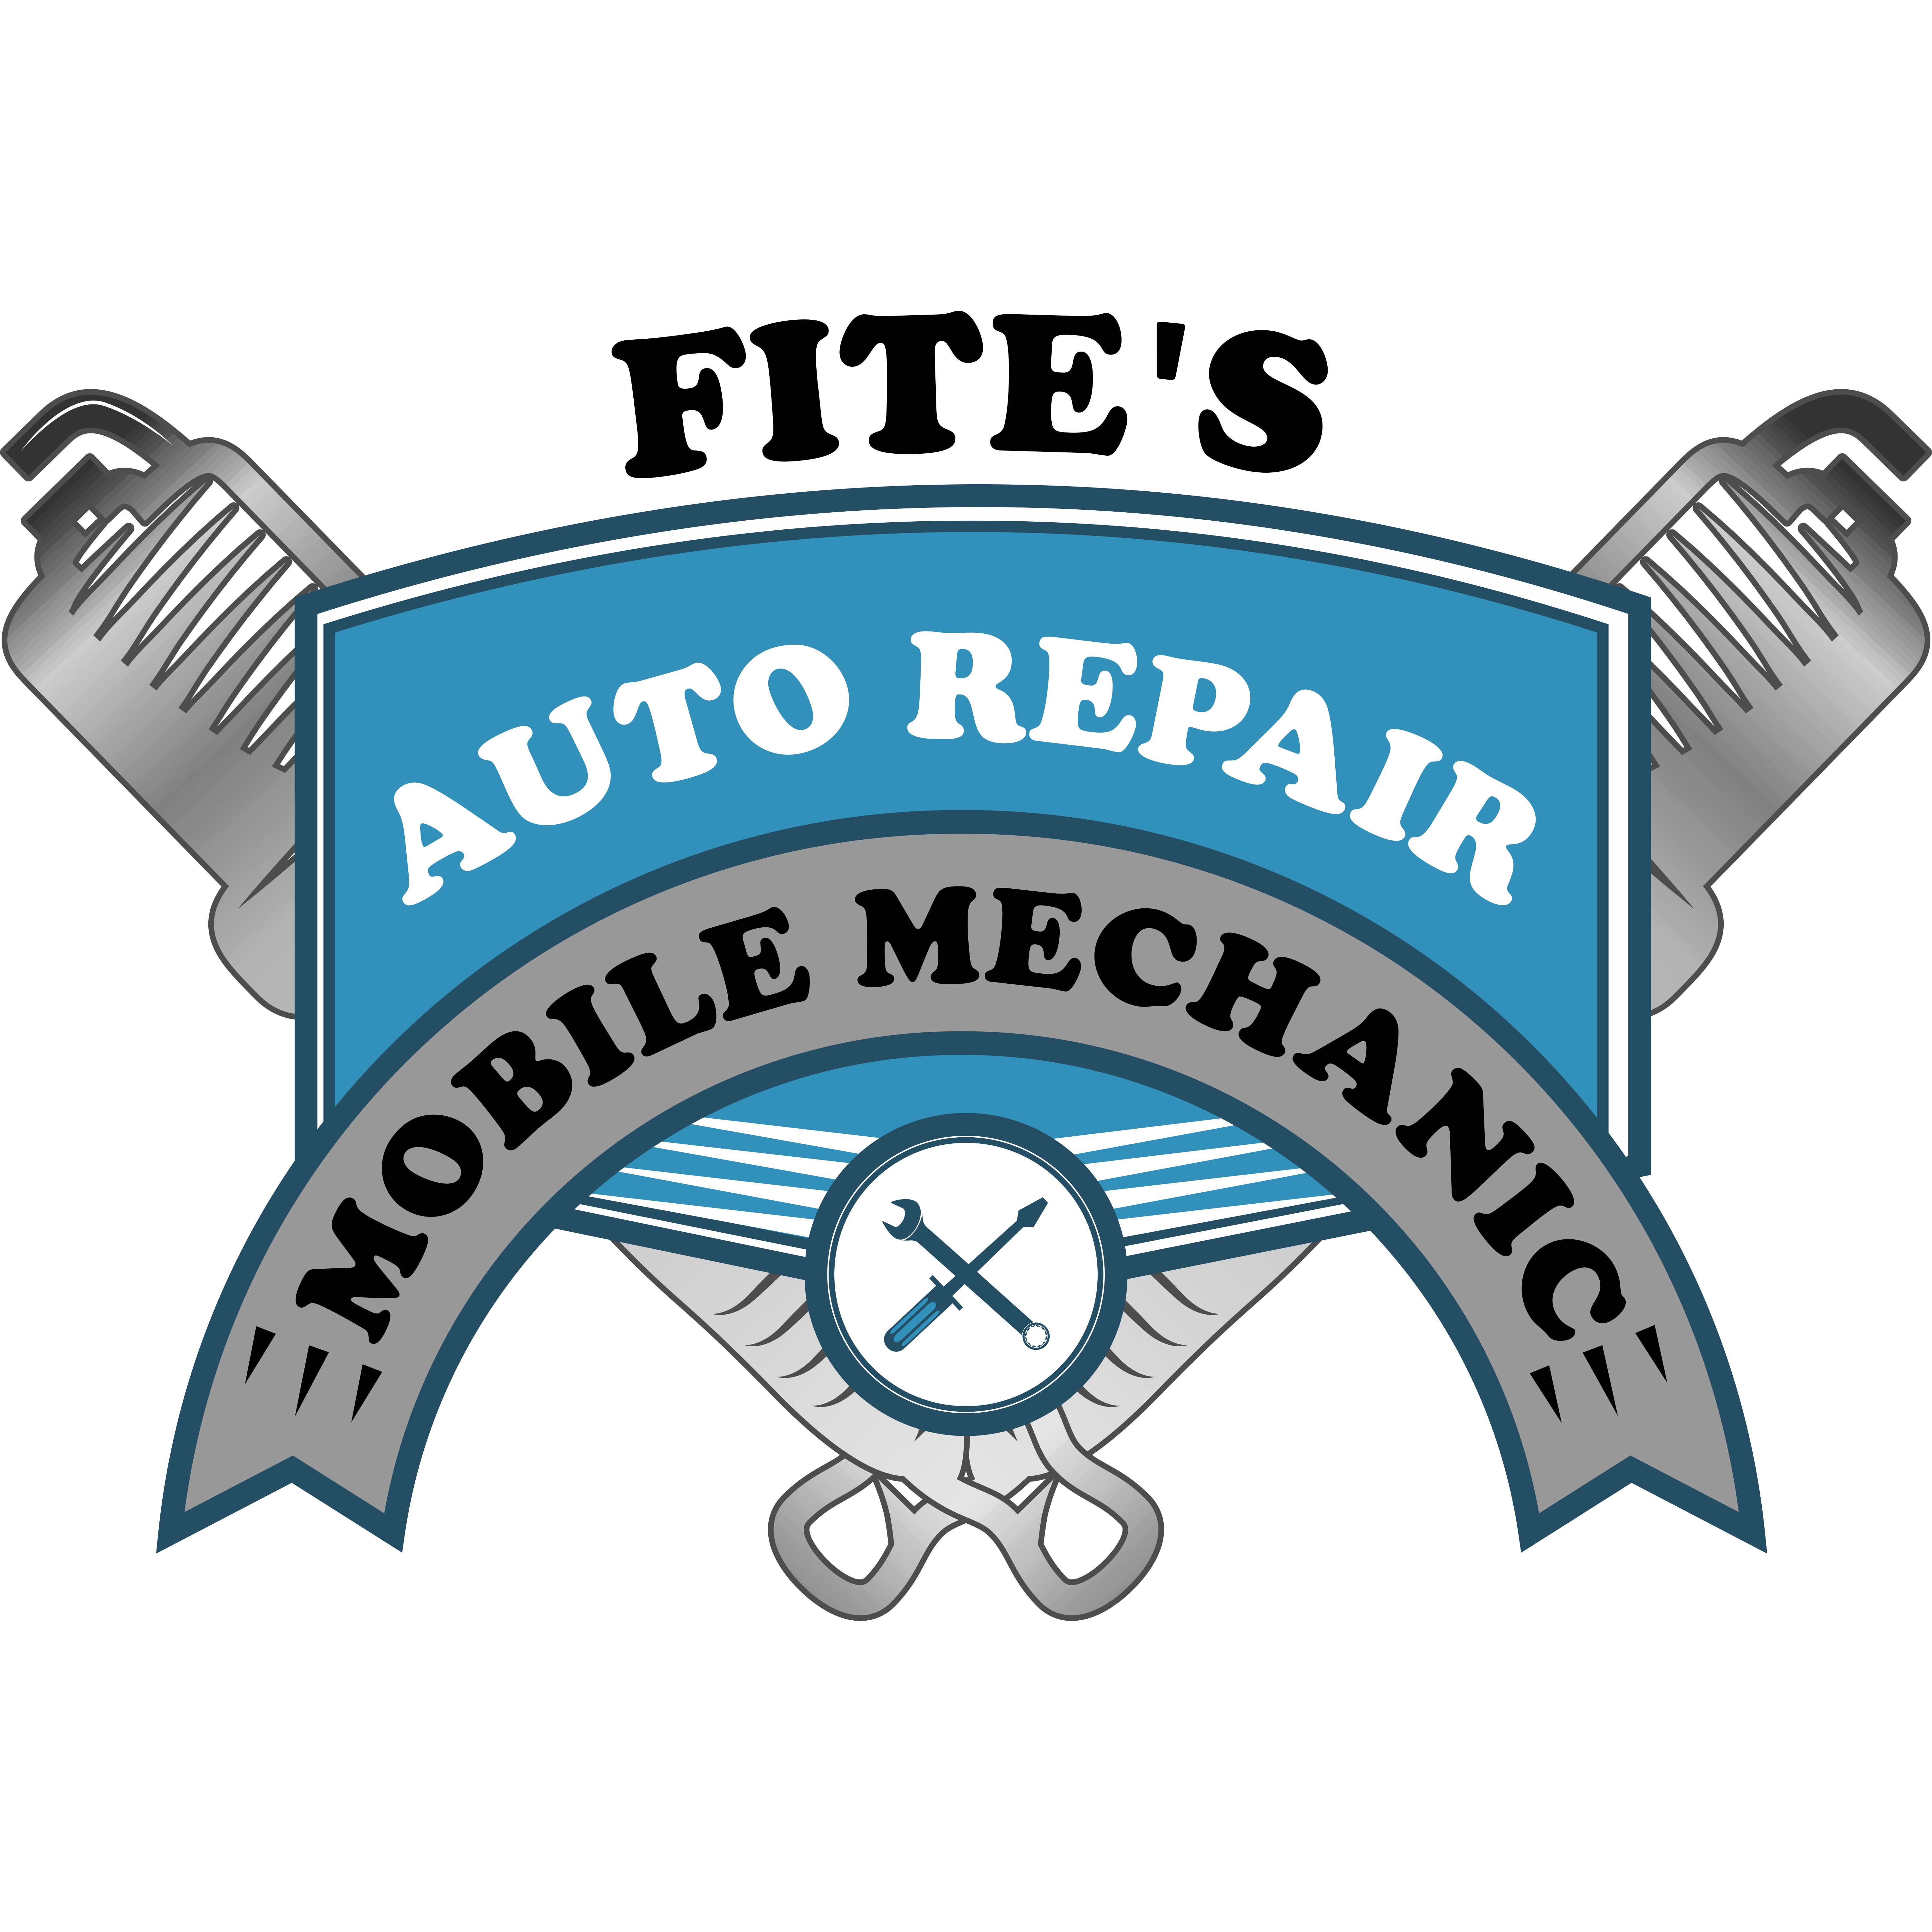 Fites Auto Repair - Como, MS 38619 - (662)710-0230 | ShowMeLocal.com